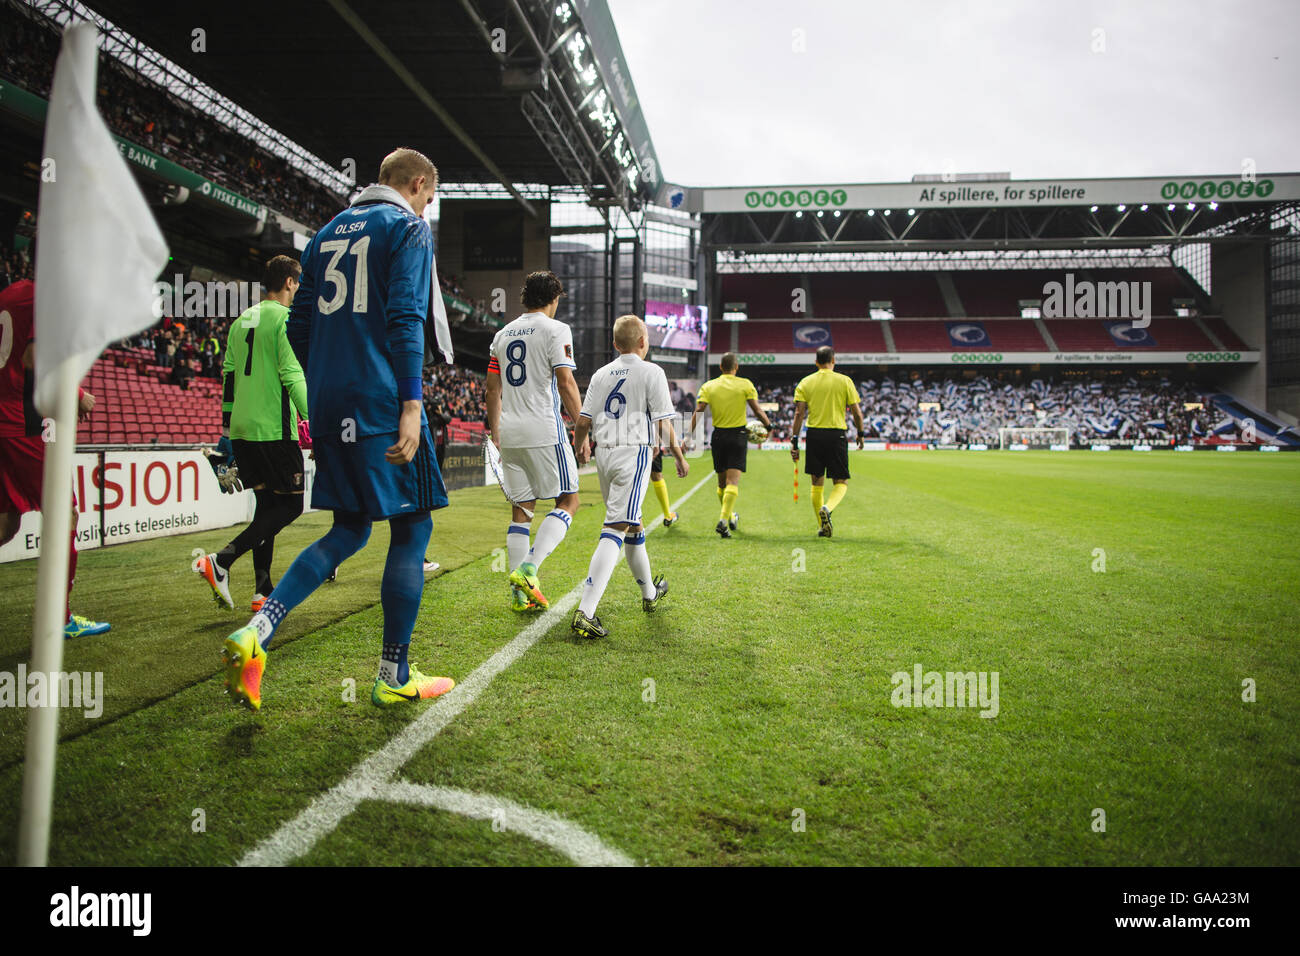 Dinamarca, Copenhague, el 3 de agosto de 2016. Los jugadores entran en Telia Parken durante la calificación de la Liga de Campeones de la UEFA partido entre el FC Copenhague y FC Astra Giurgiu. FC Copenhague ganó el partido 3-0 y a través de la ronda de play-off. Foto de stock